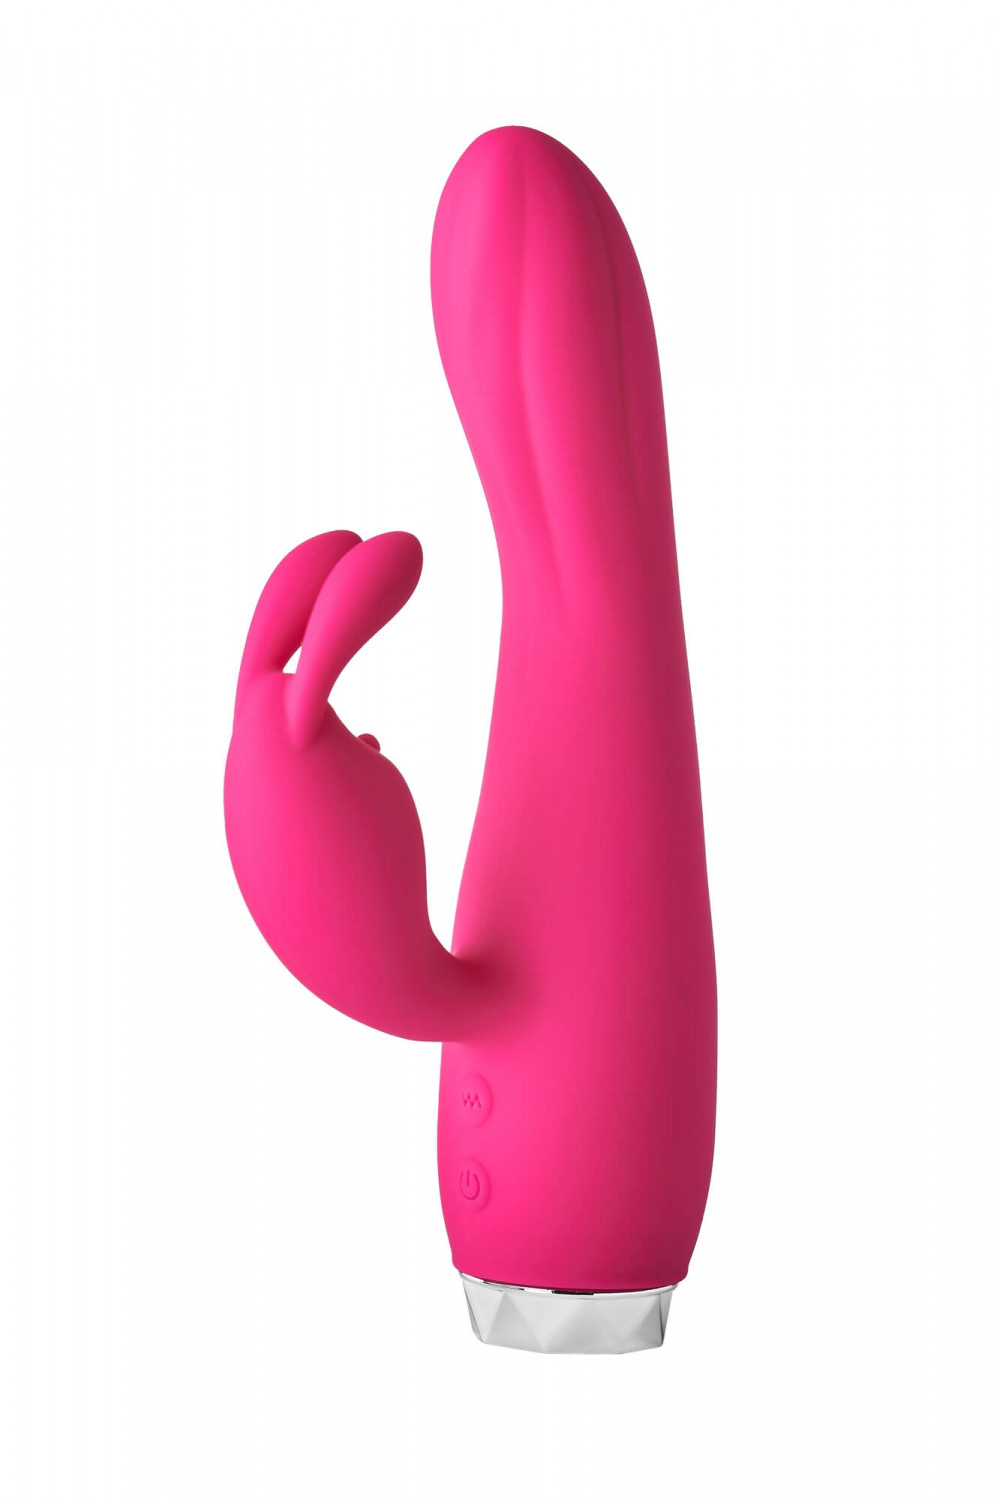 Flirts - nyuszis csiklókaros vibrátor (pink)